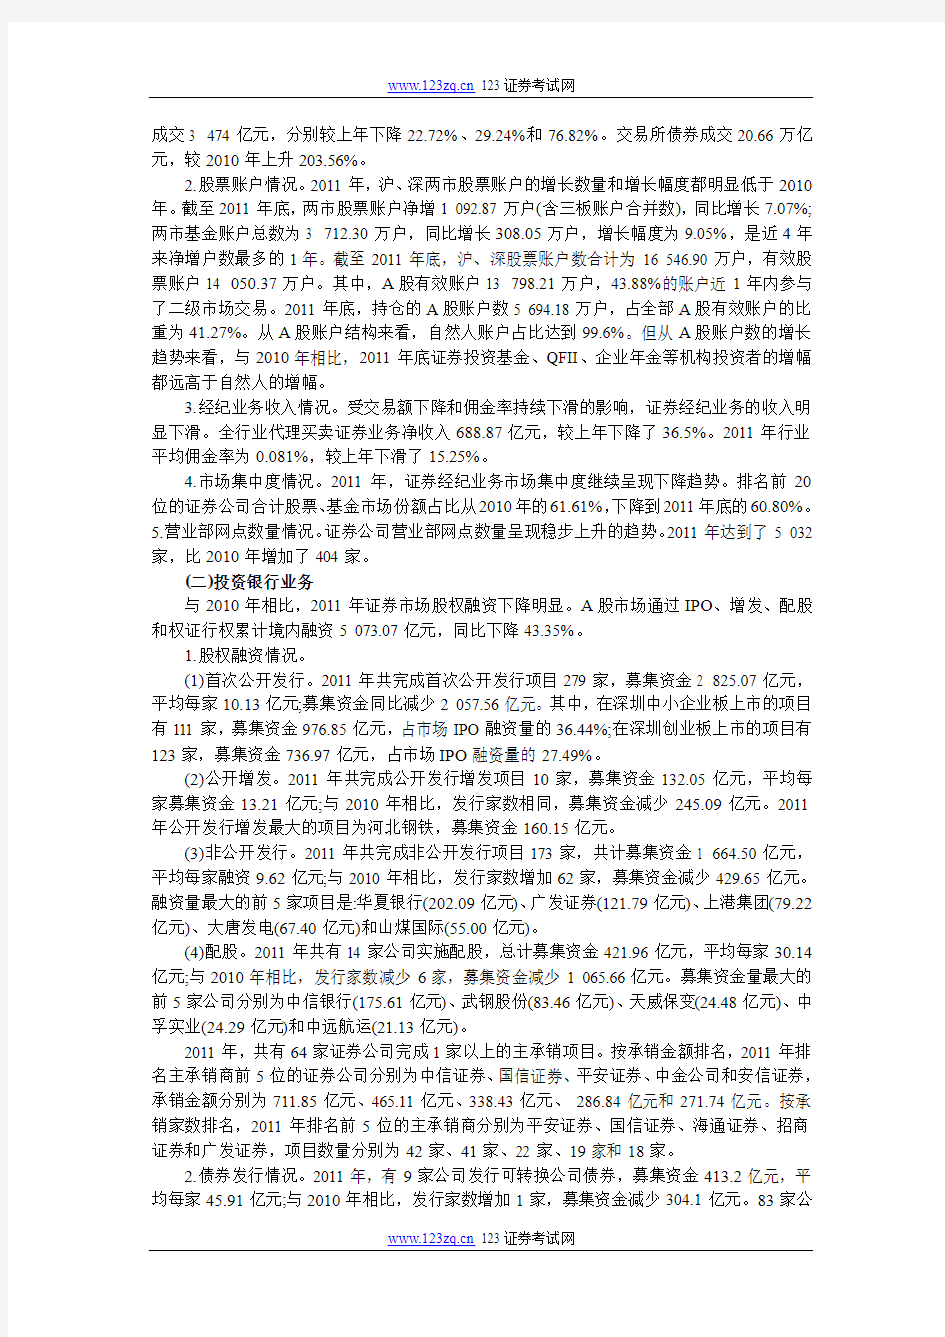 证券从业资格考试《中国证券业发展报告》(2012)总报告(摘要版)